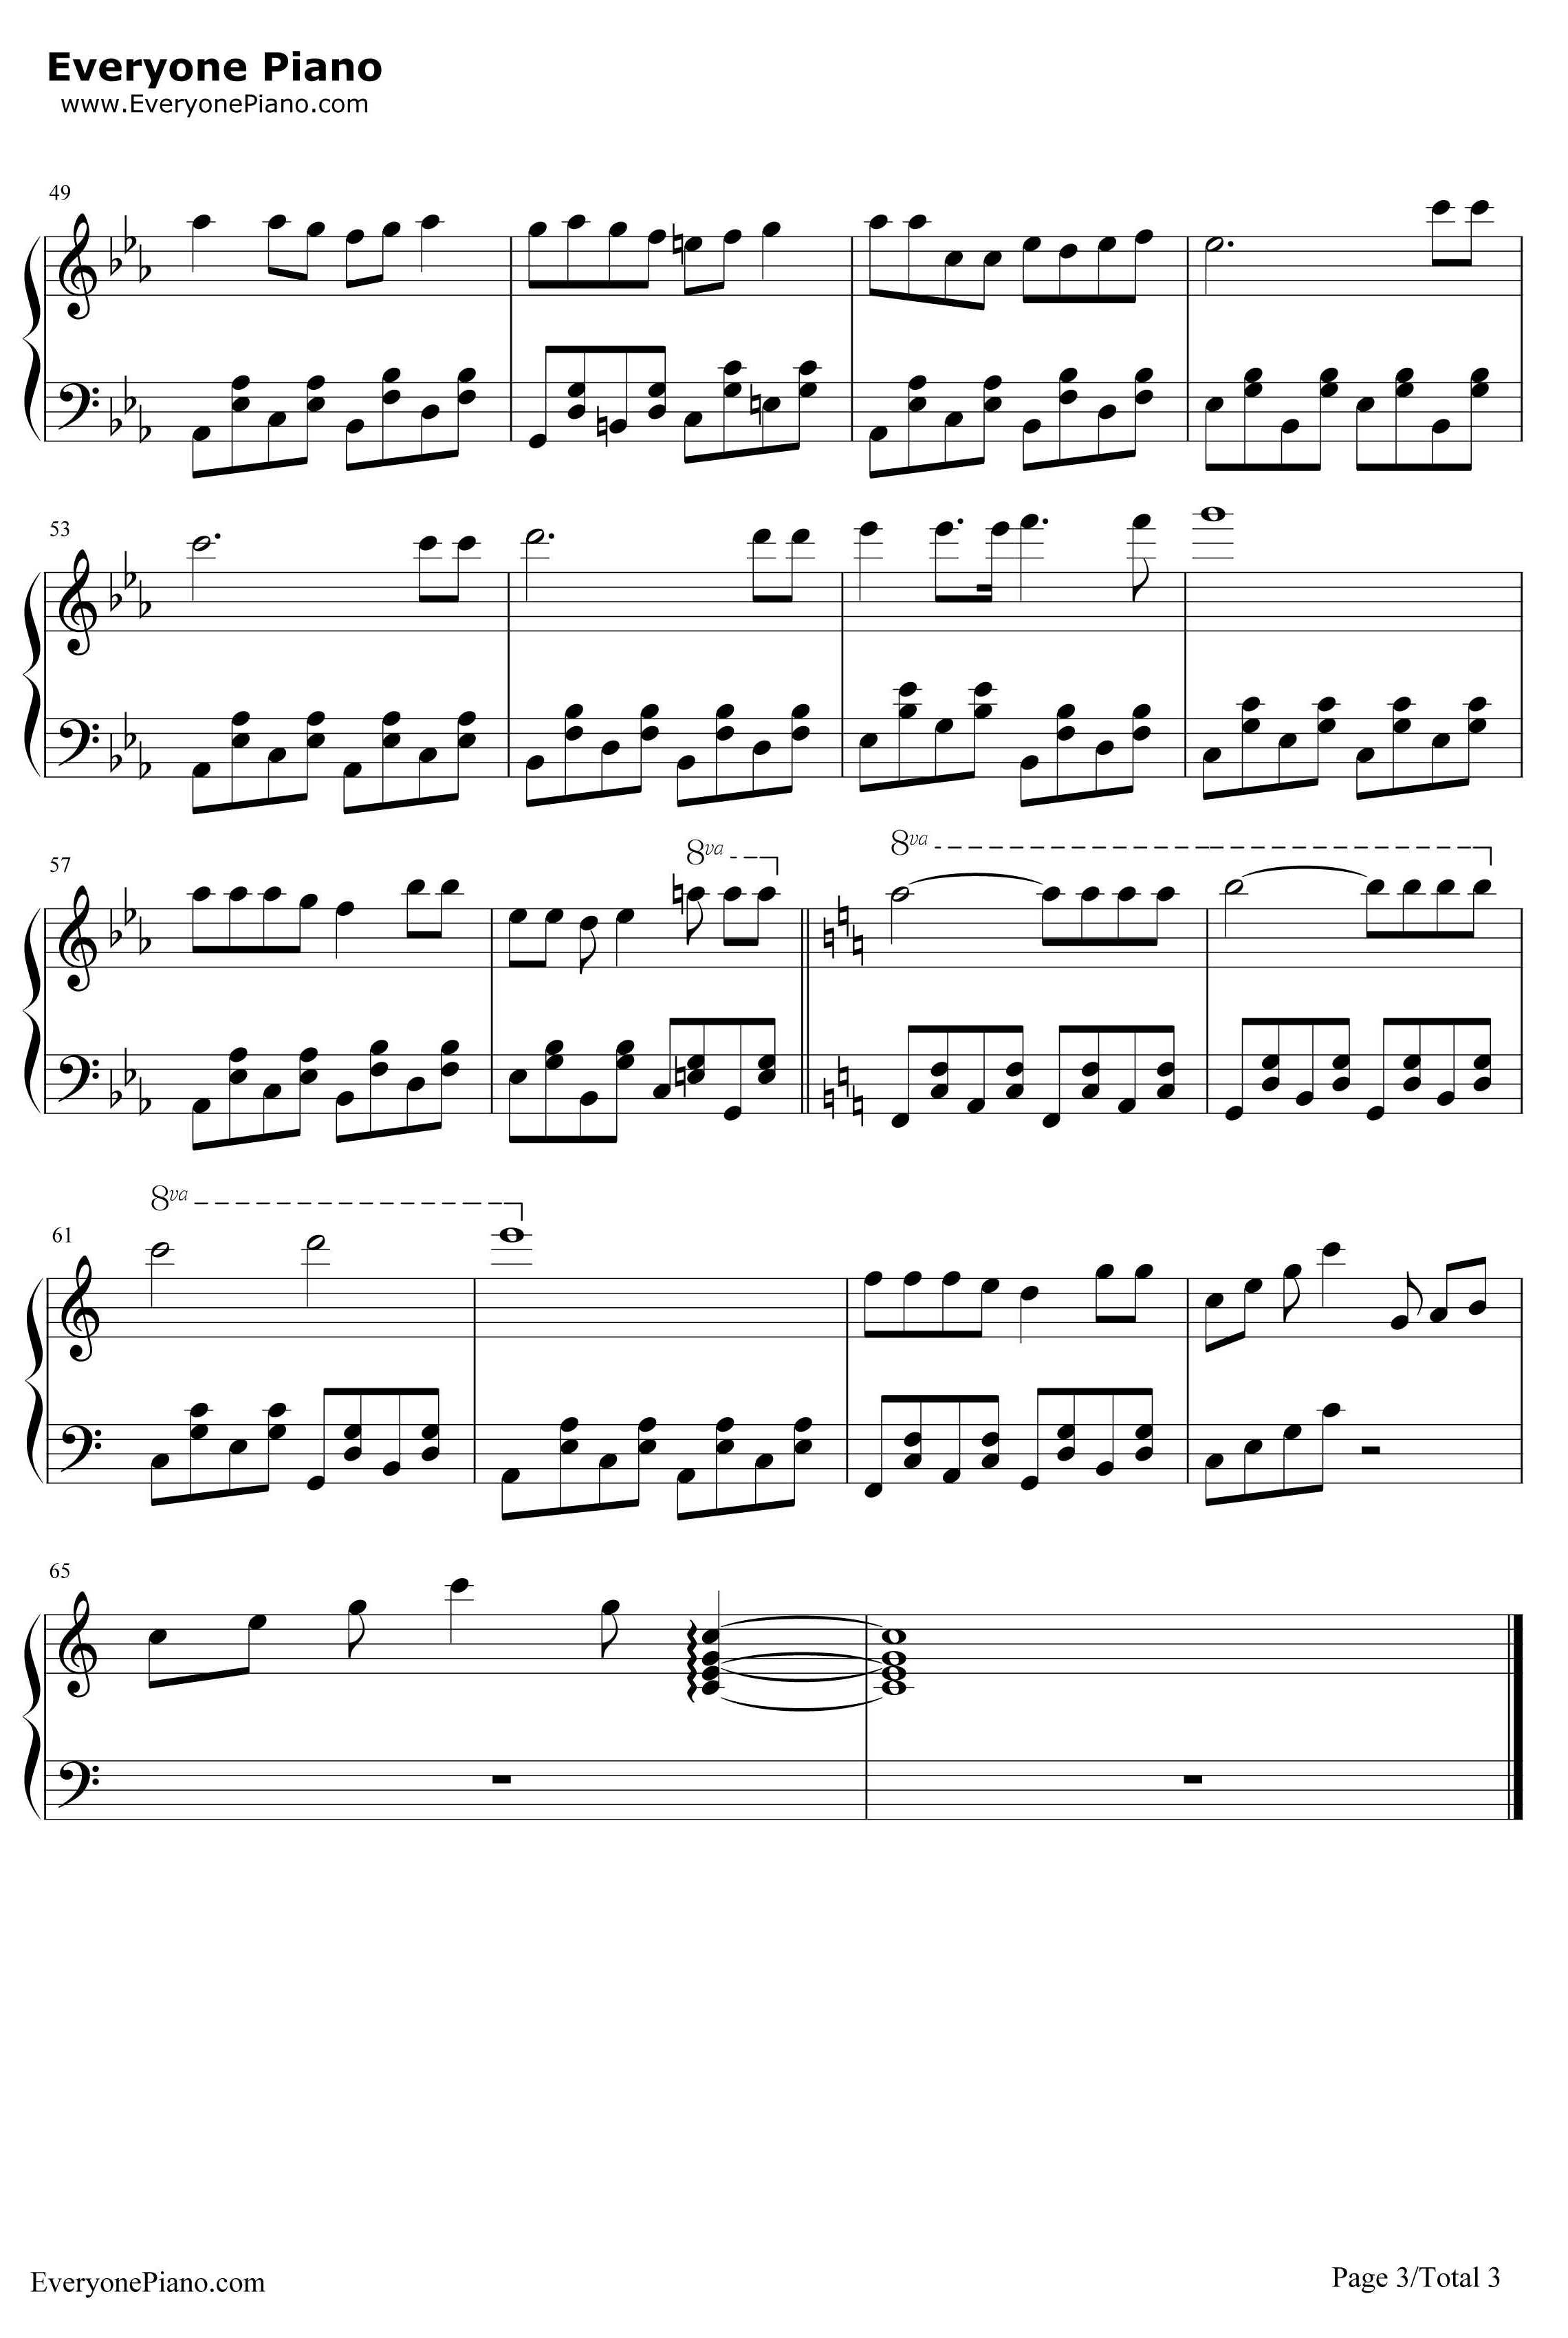 高音厨音域テスト钢琴谱-初音ミク3